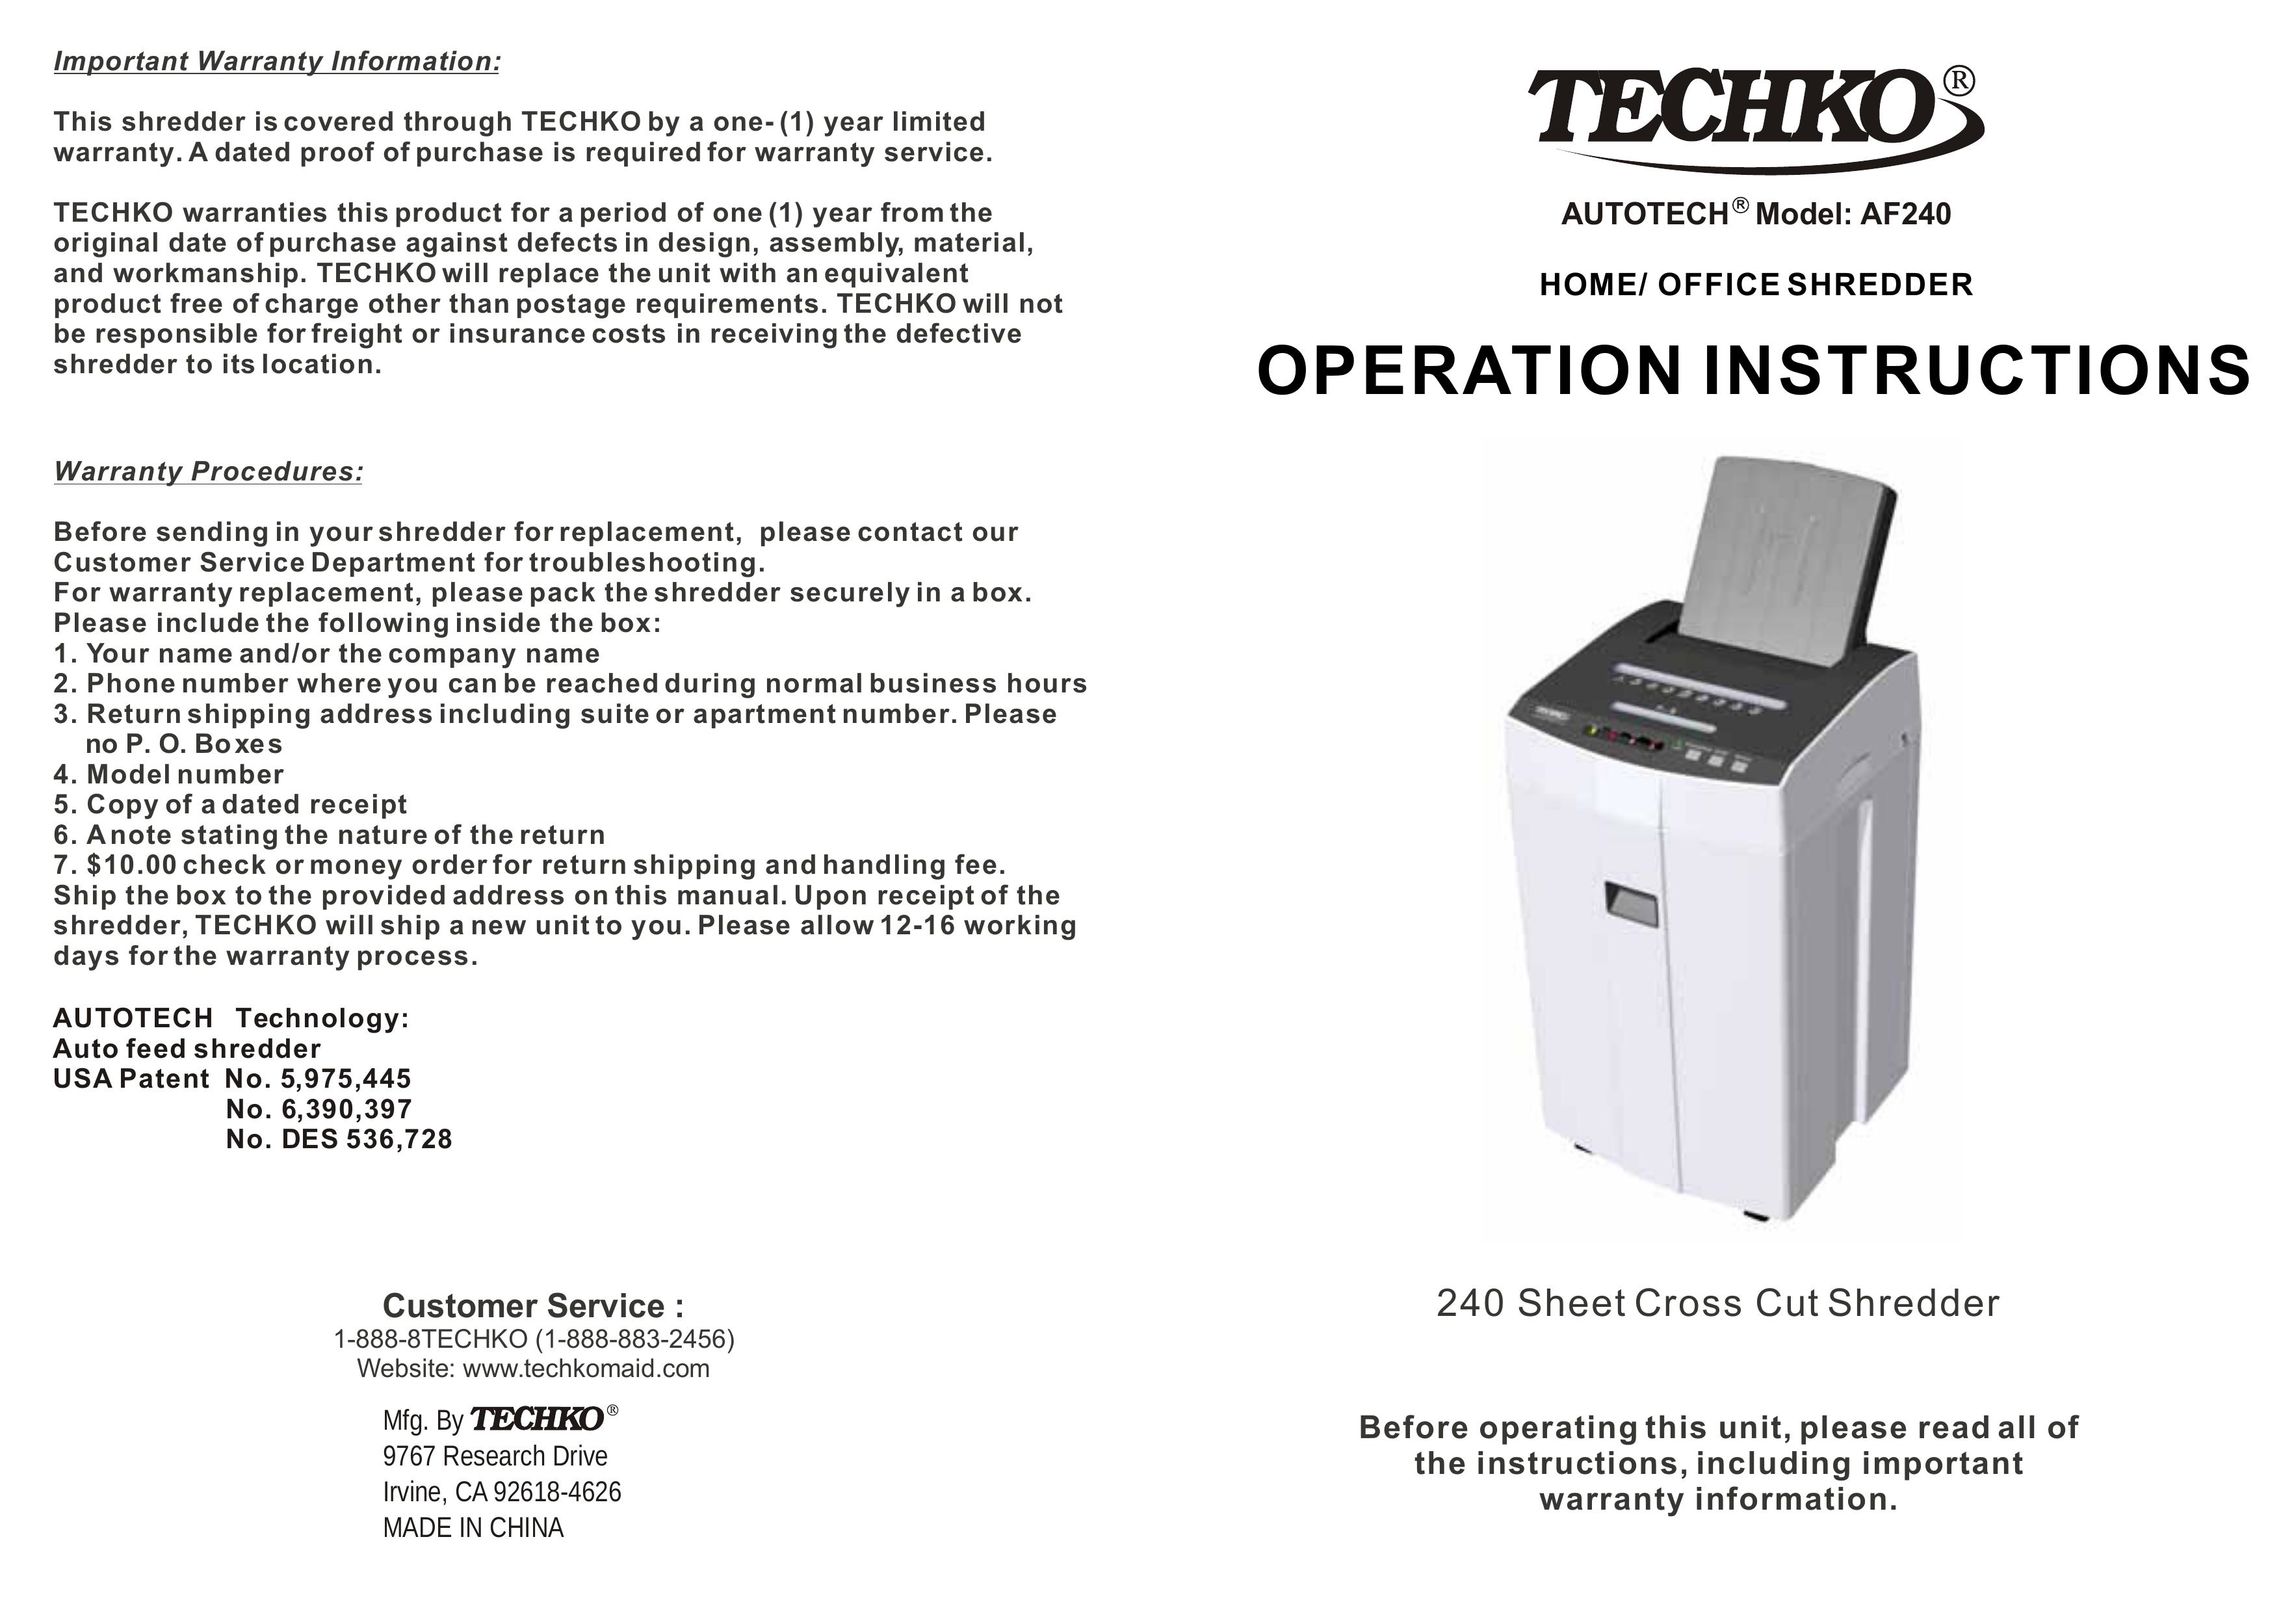 Techko AF240 Paper Shredder User Manual